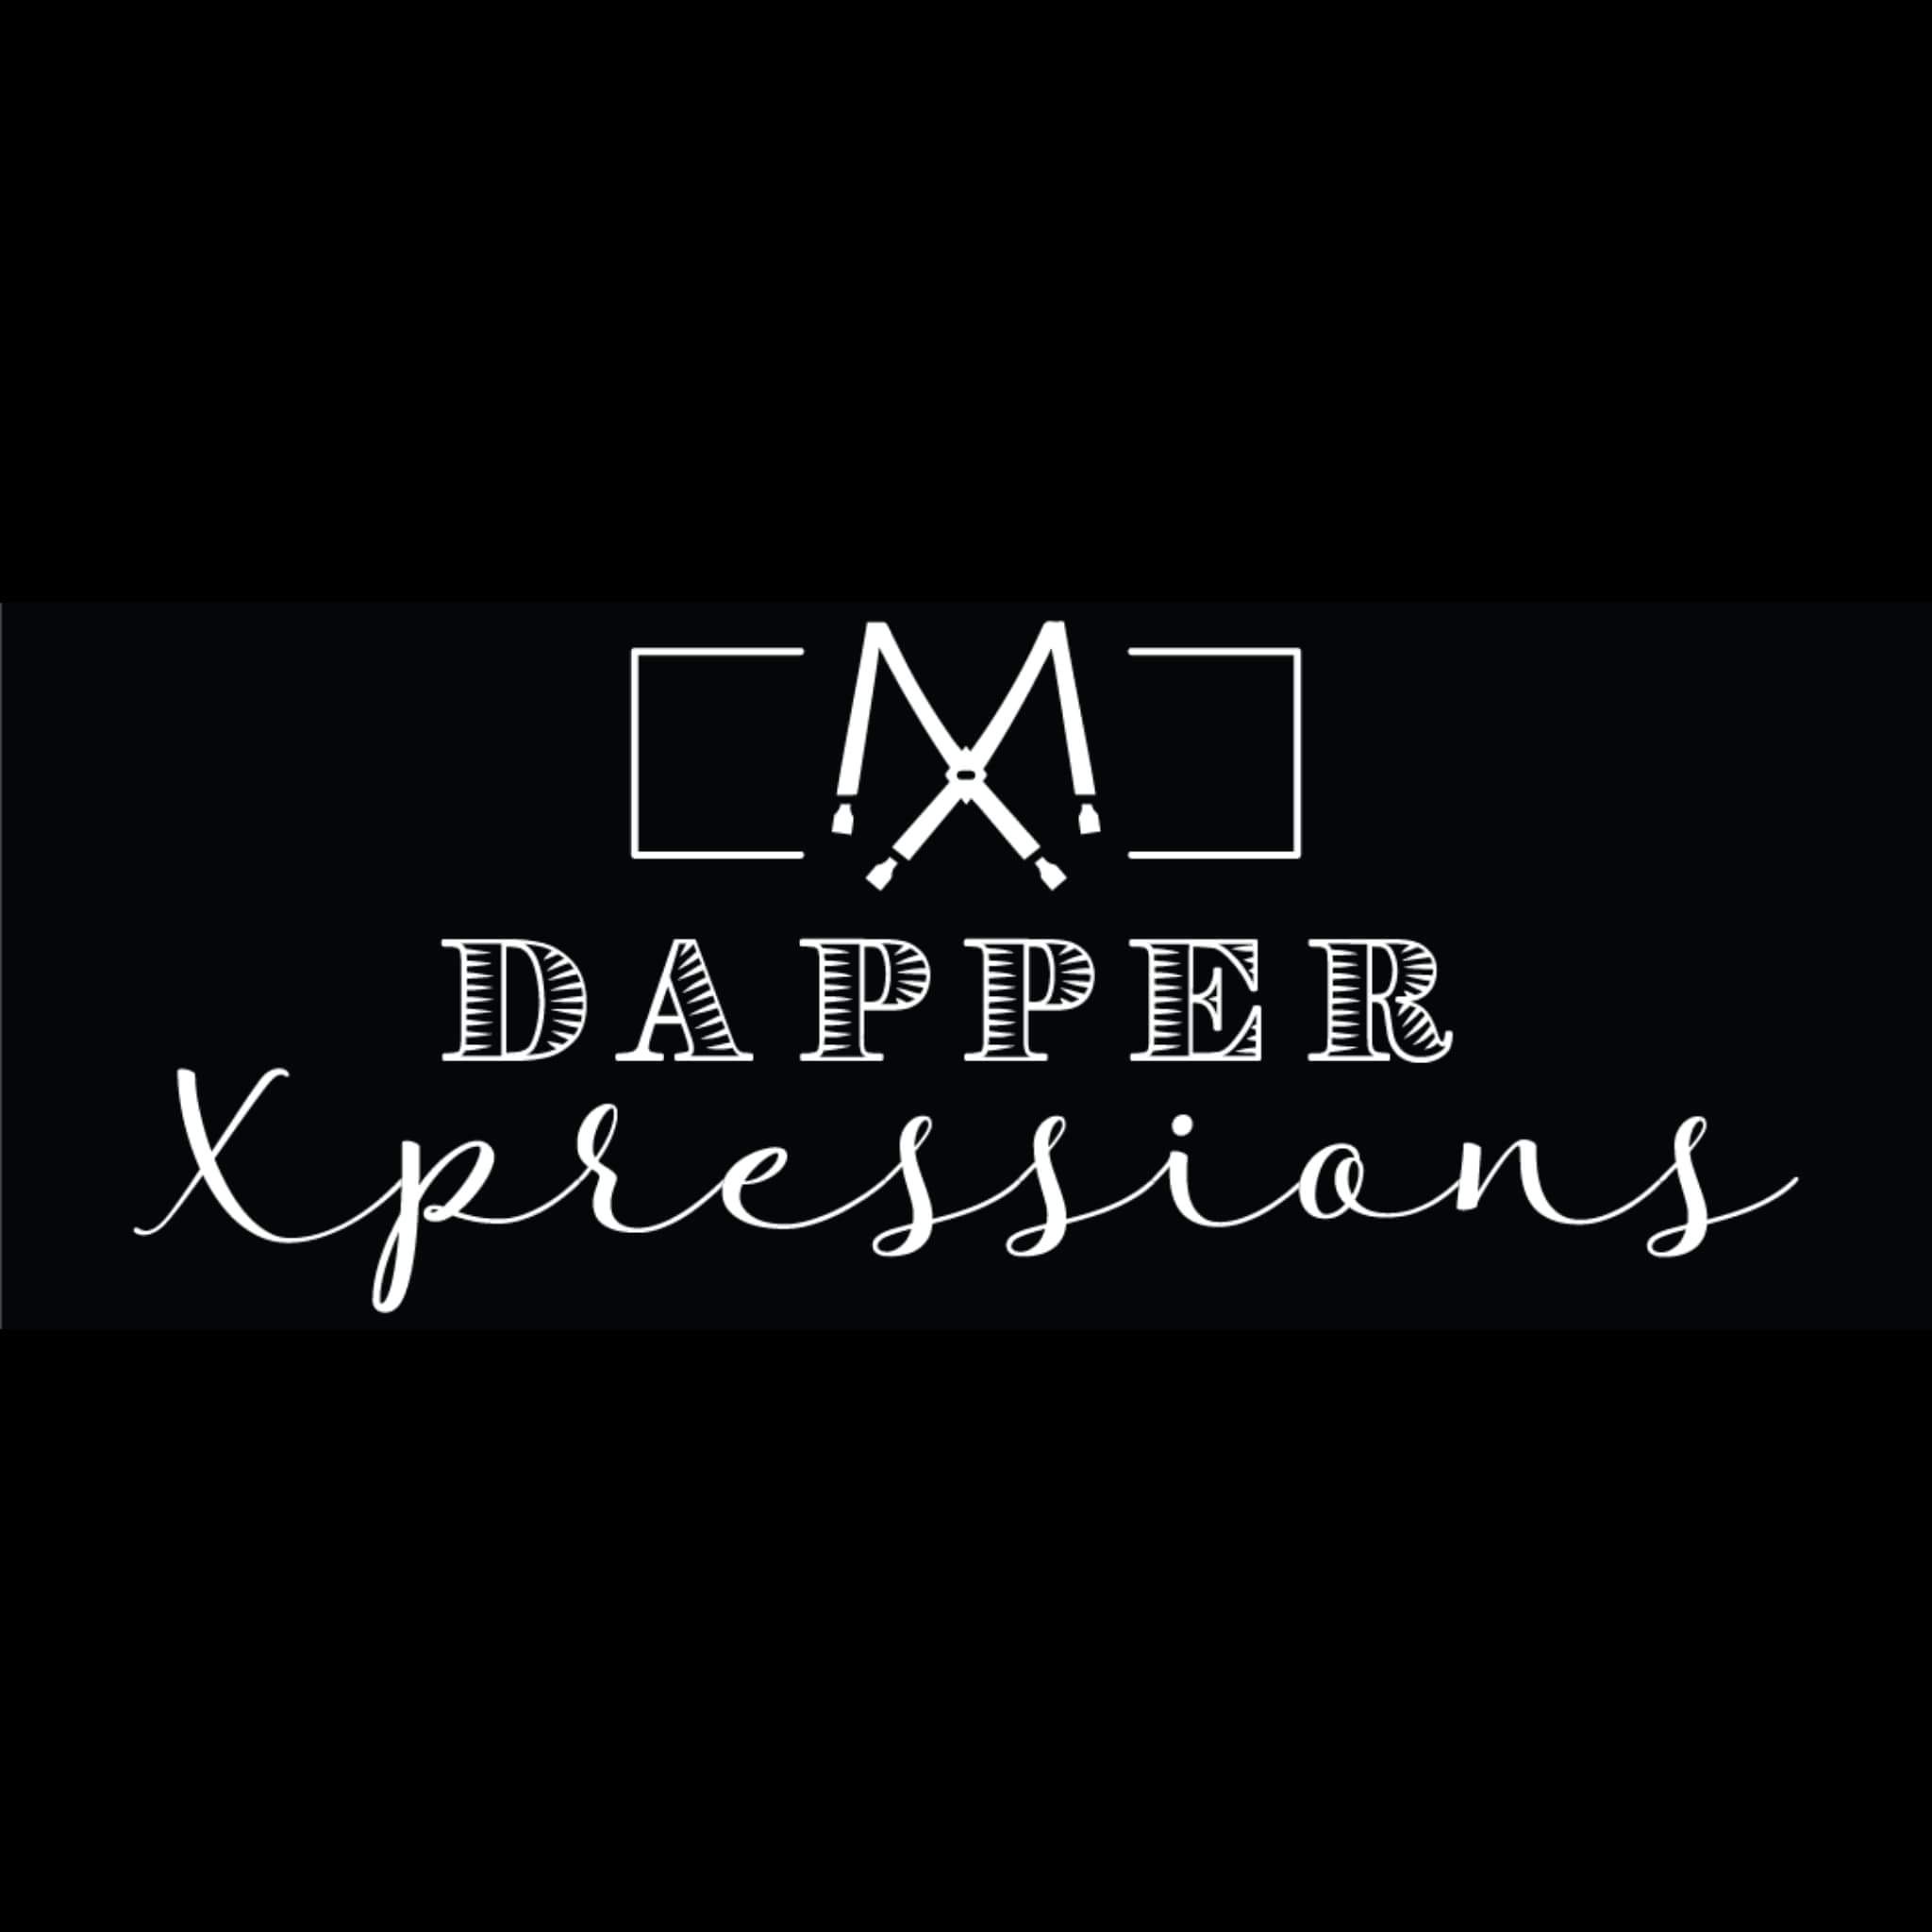 Dapper Xpressions